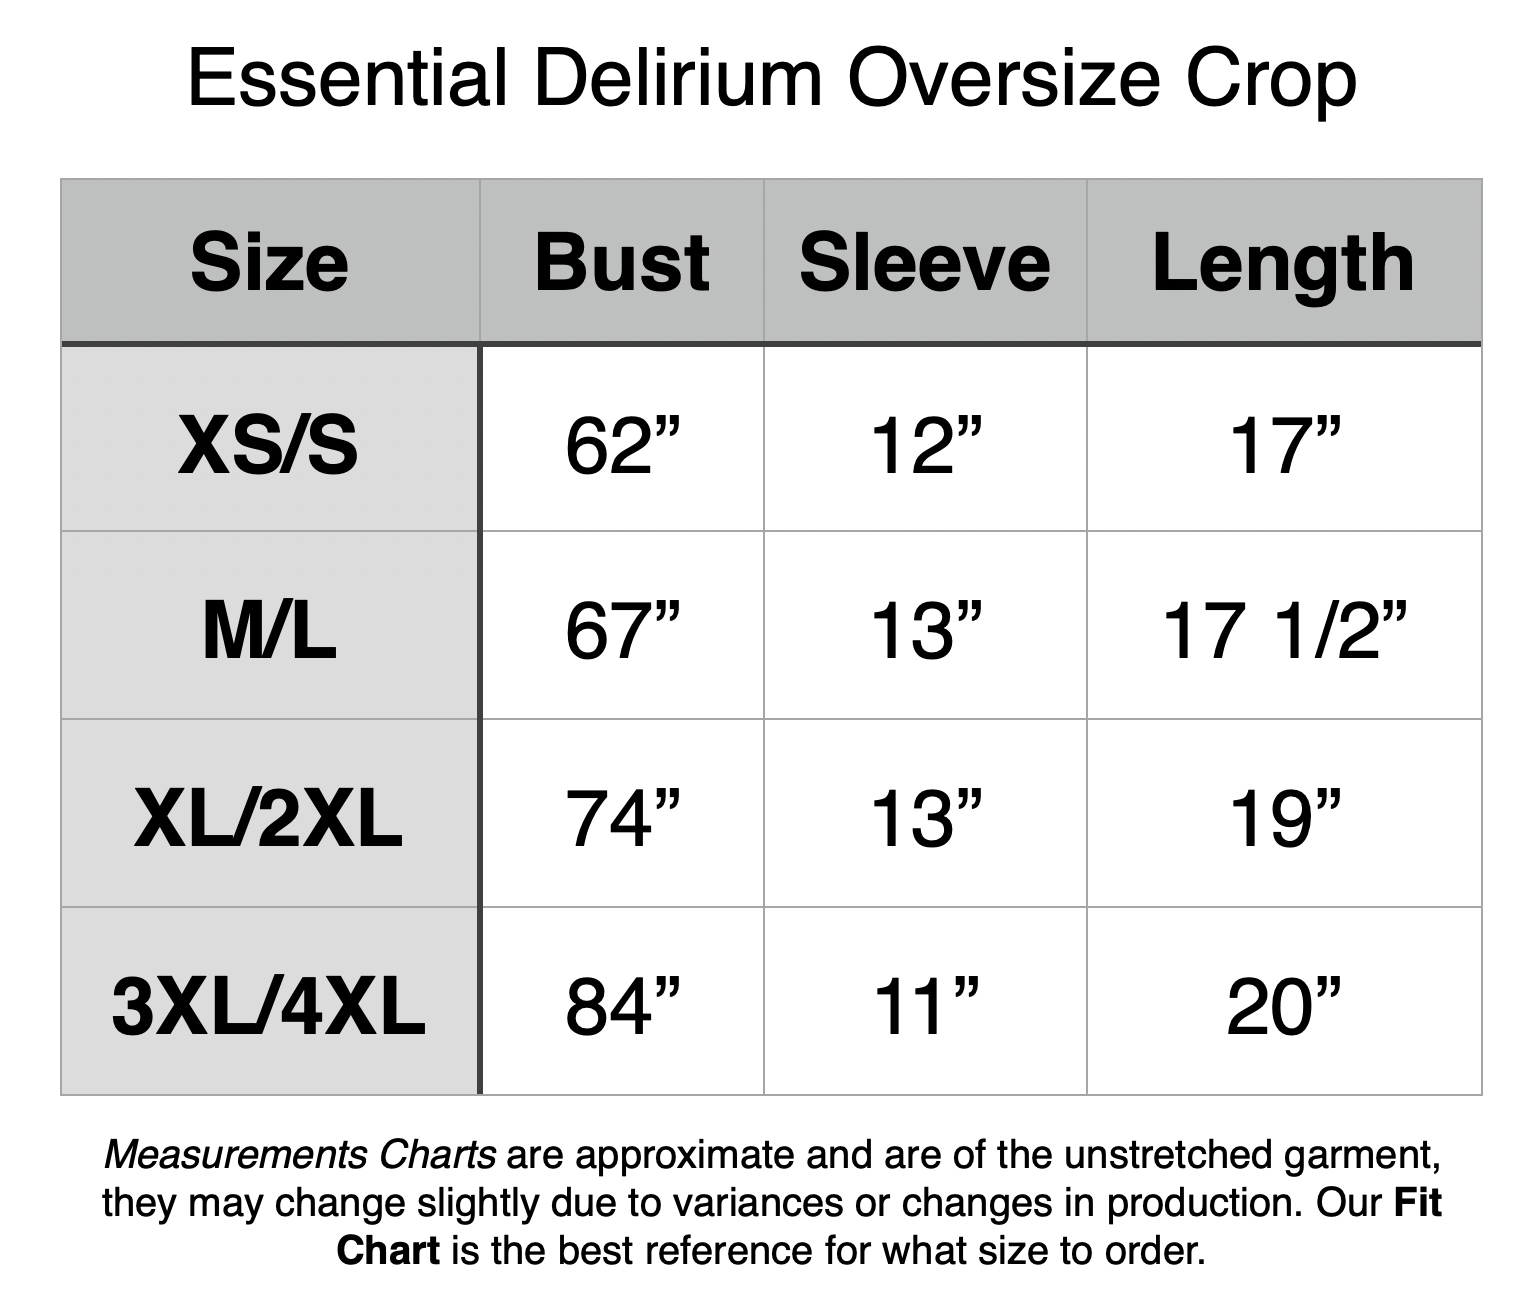 Essential Delirium Oversize Crop - XS/S: 62” Bust, 12” Sleeve, 17” Length. M/L: 67” Bust, 13” Sleeve, 17.5” Length. XL/2XL: 74” Bust, 13” Sleeve, 19” Length. 3XL/4XL: 84” Bust, 11” Sleeve, 20” Length.